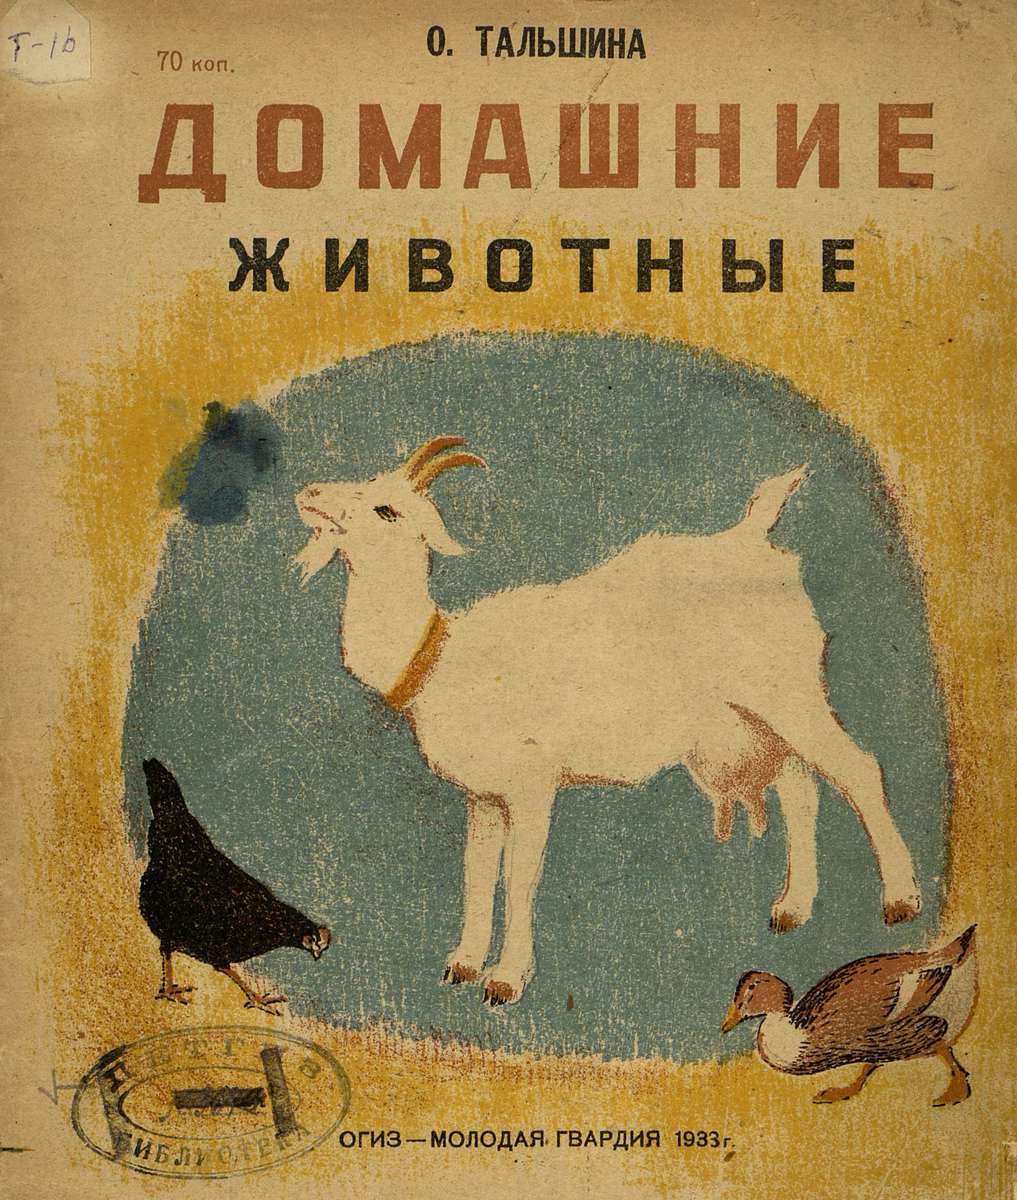 Тальшина Ольга Константиновна - Домашние животные - 1933]